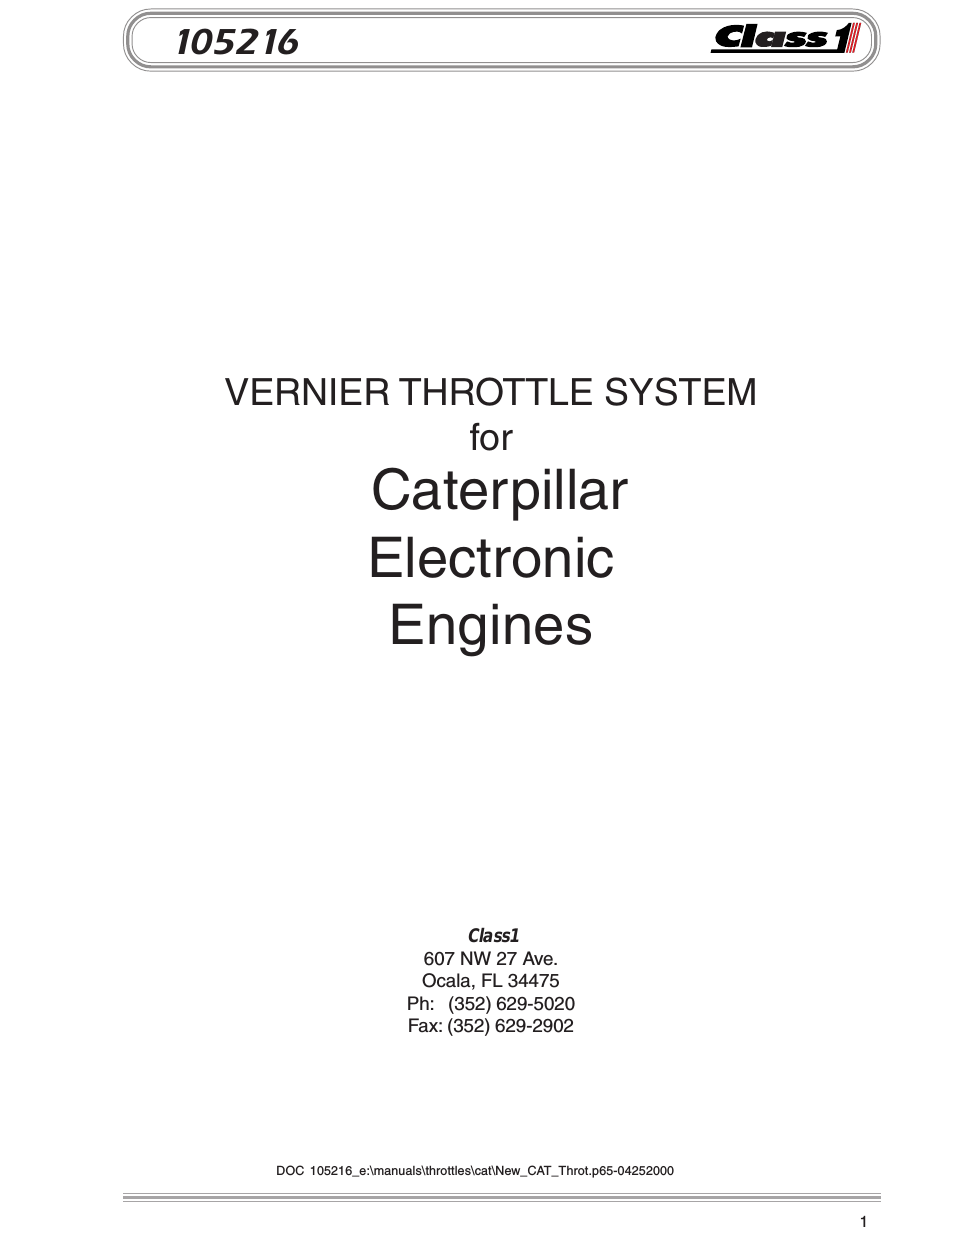 Vernier Throttle for CAT- new